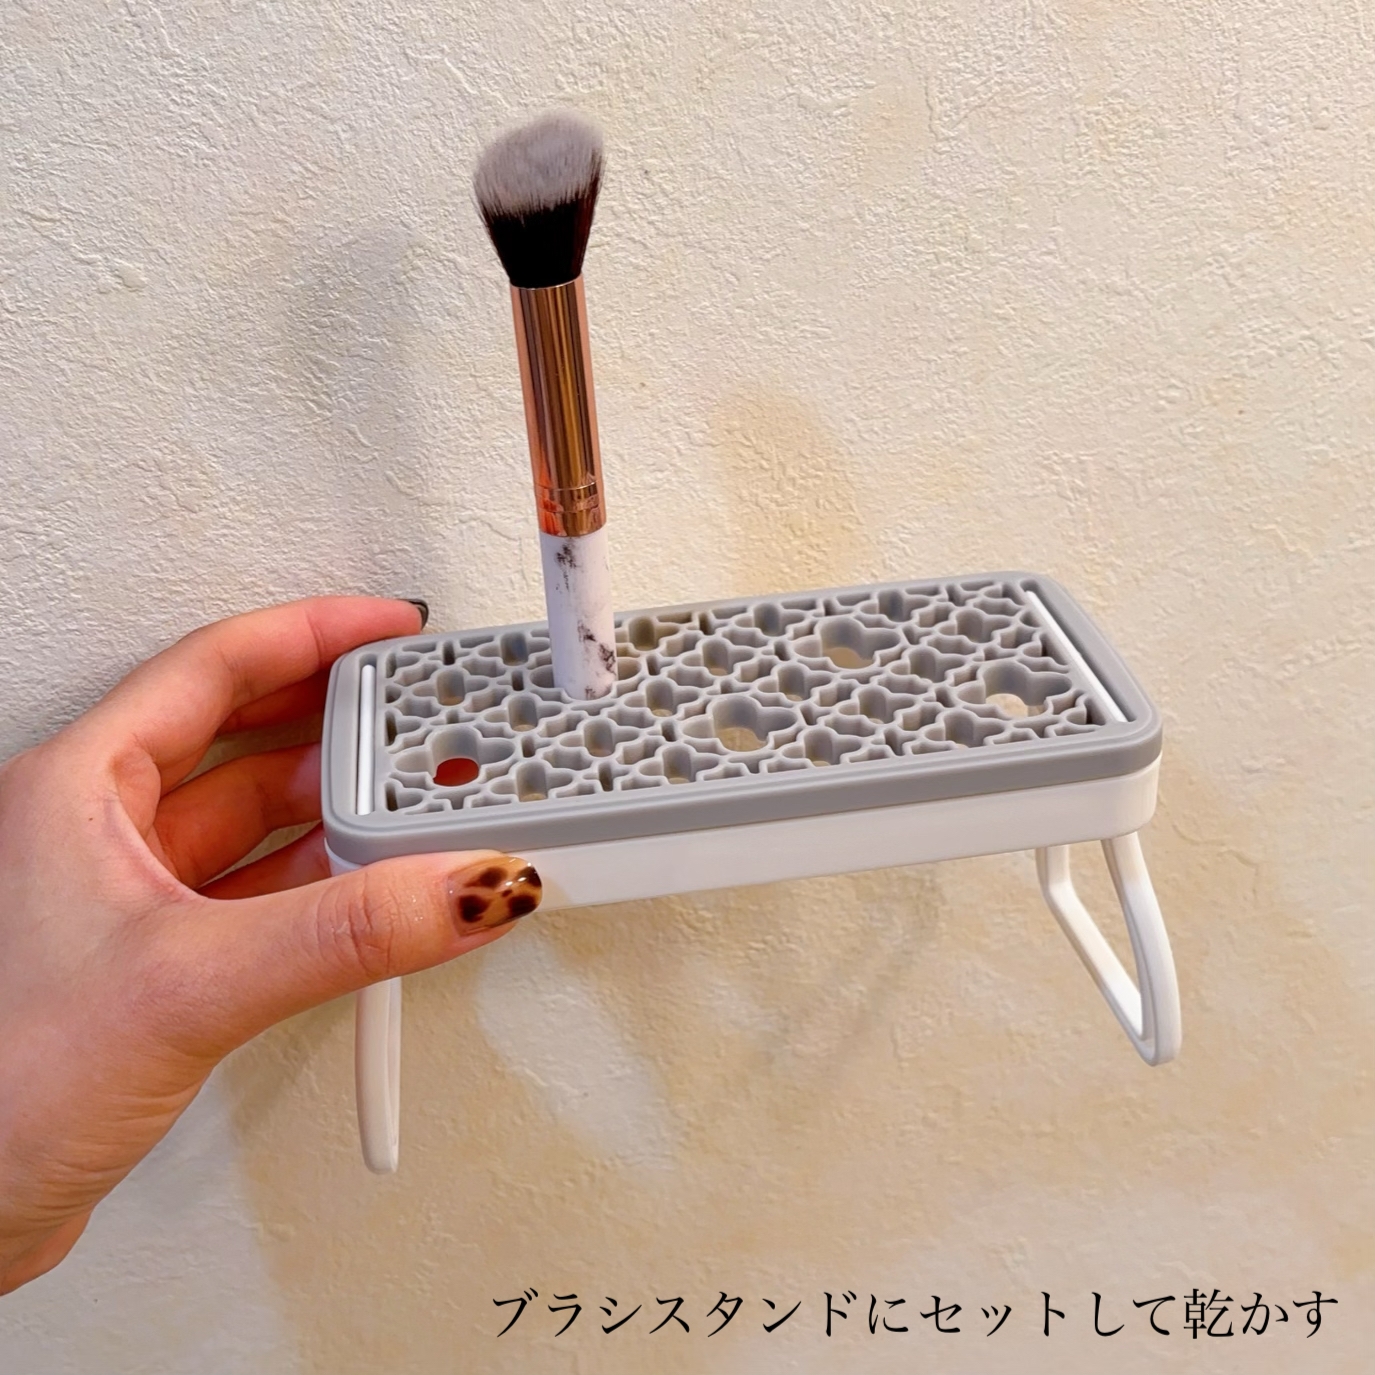 博雲堂(HAKUUNDO) 熊野筆リセッターの良い点・メリットに関するふっきーさんの口コミ画像3